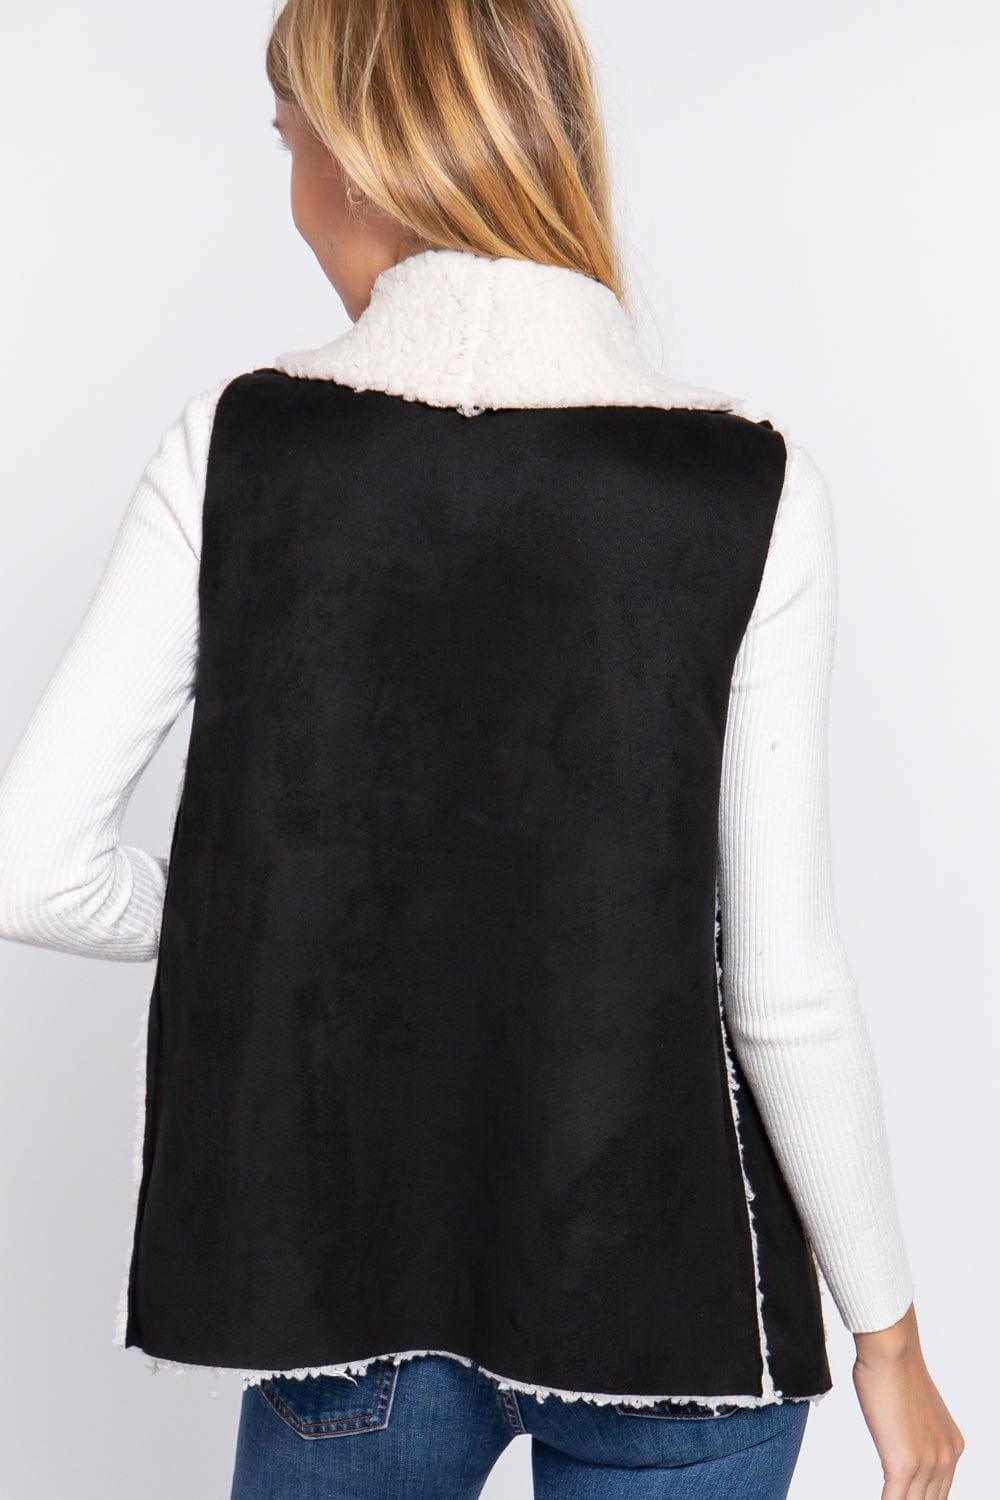 SAVLUXE Default Black Shawl Faux Suede Fur Vest